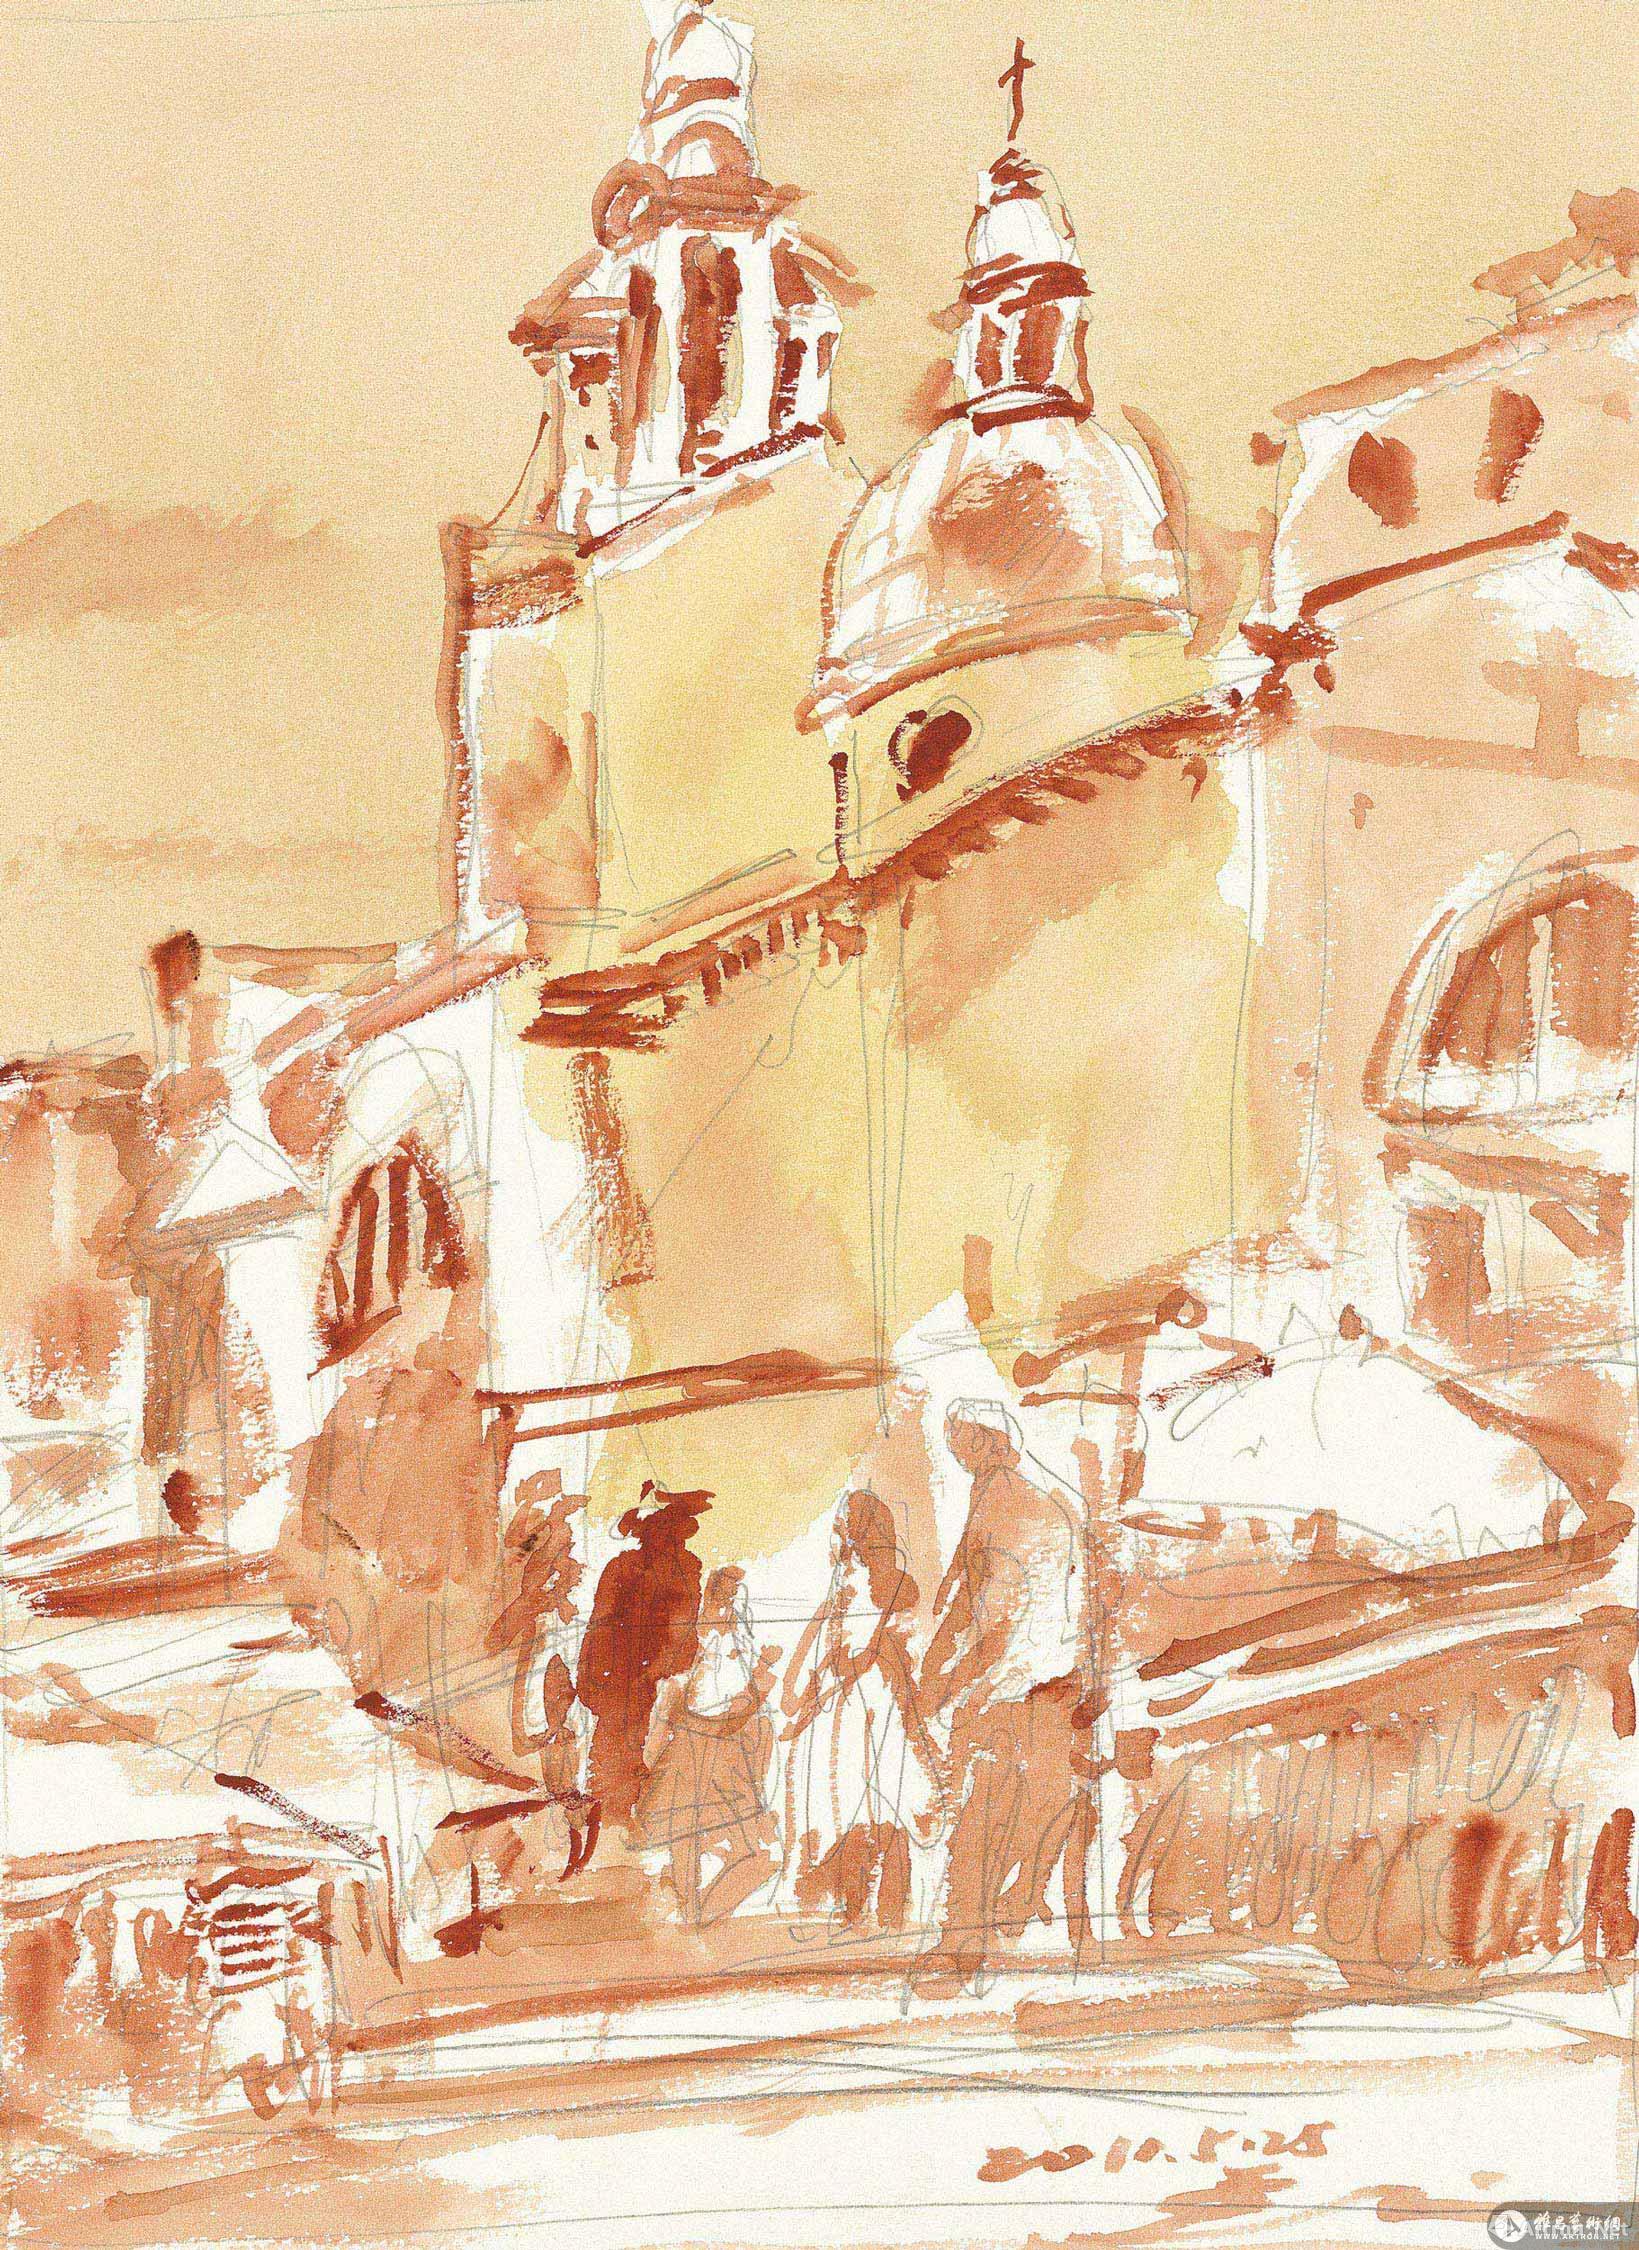 威尼斯速写No.1 No.1 of the Sketching of Venice Series